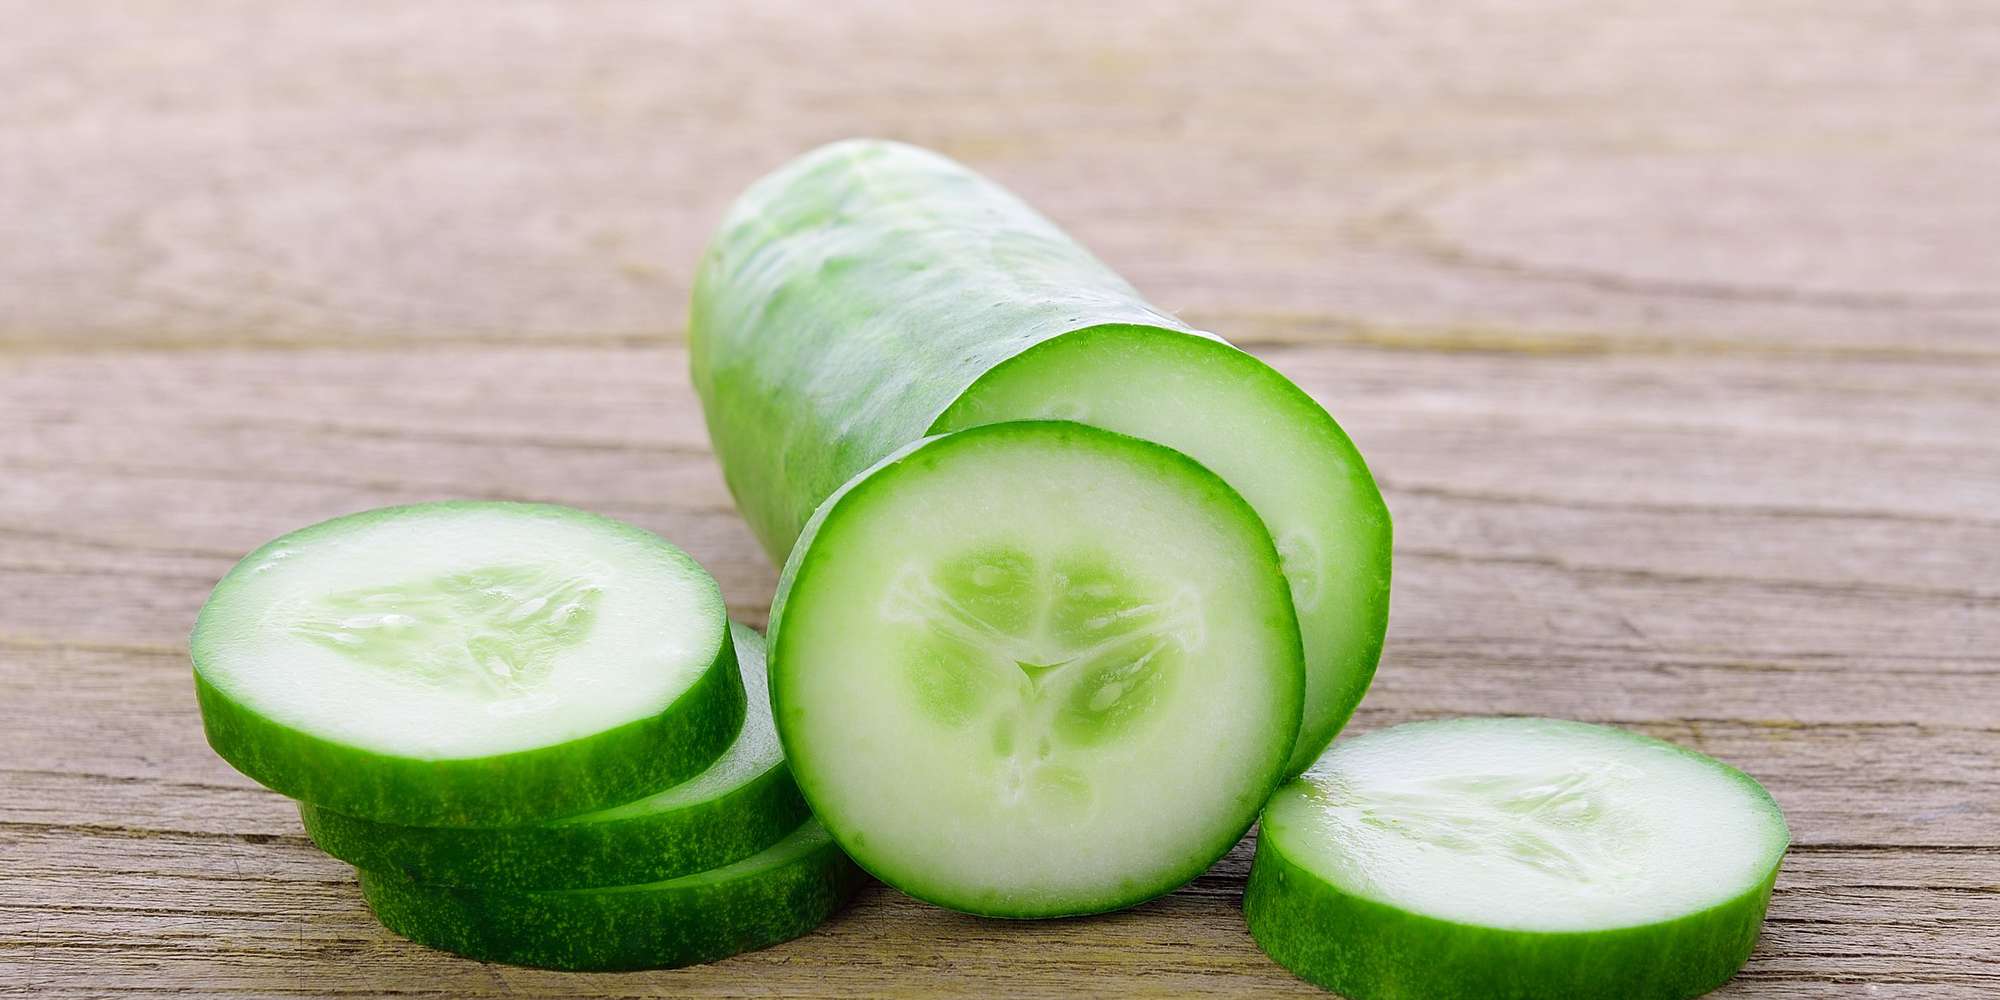 Cucumber Date Salad